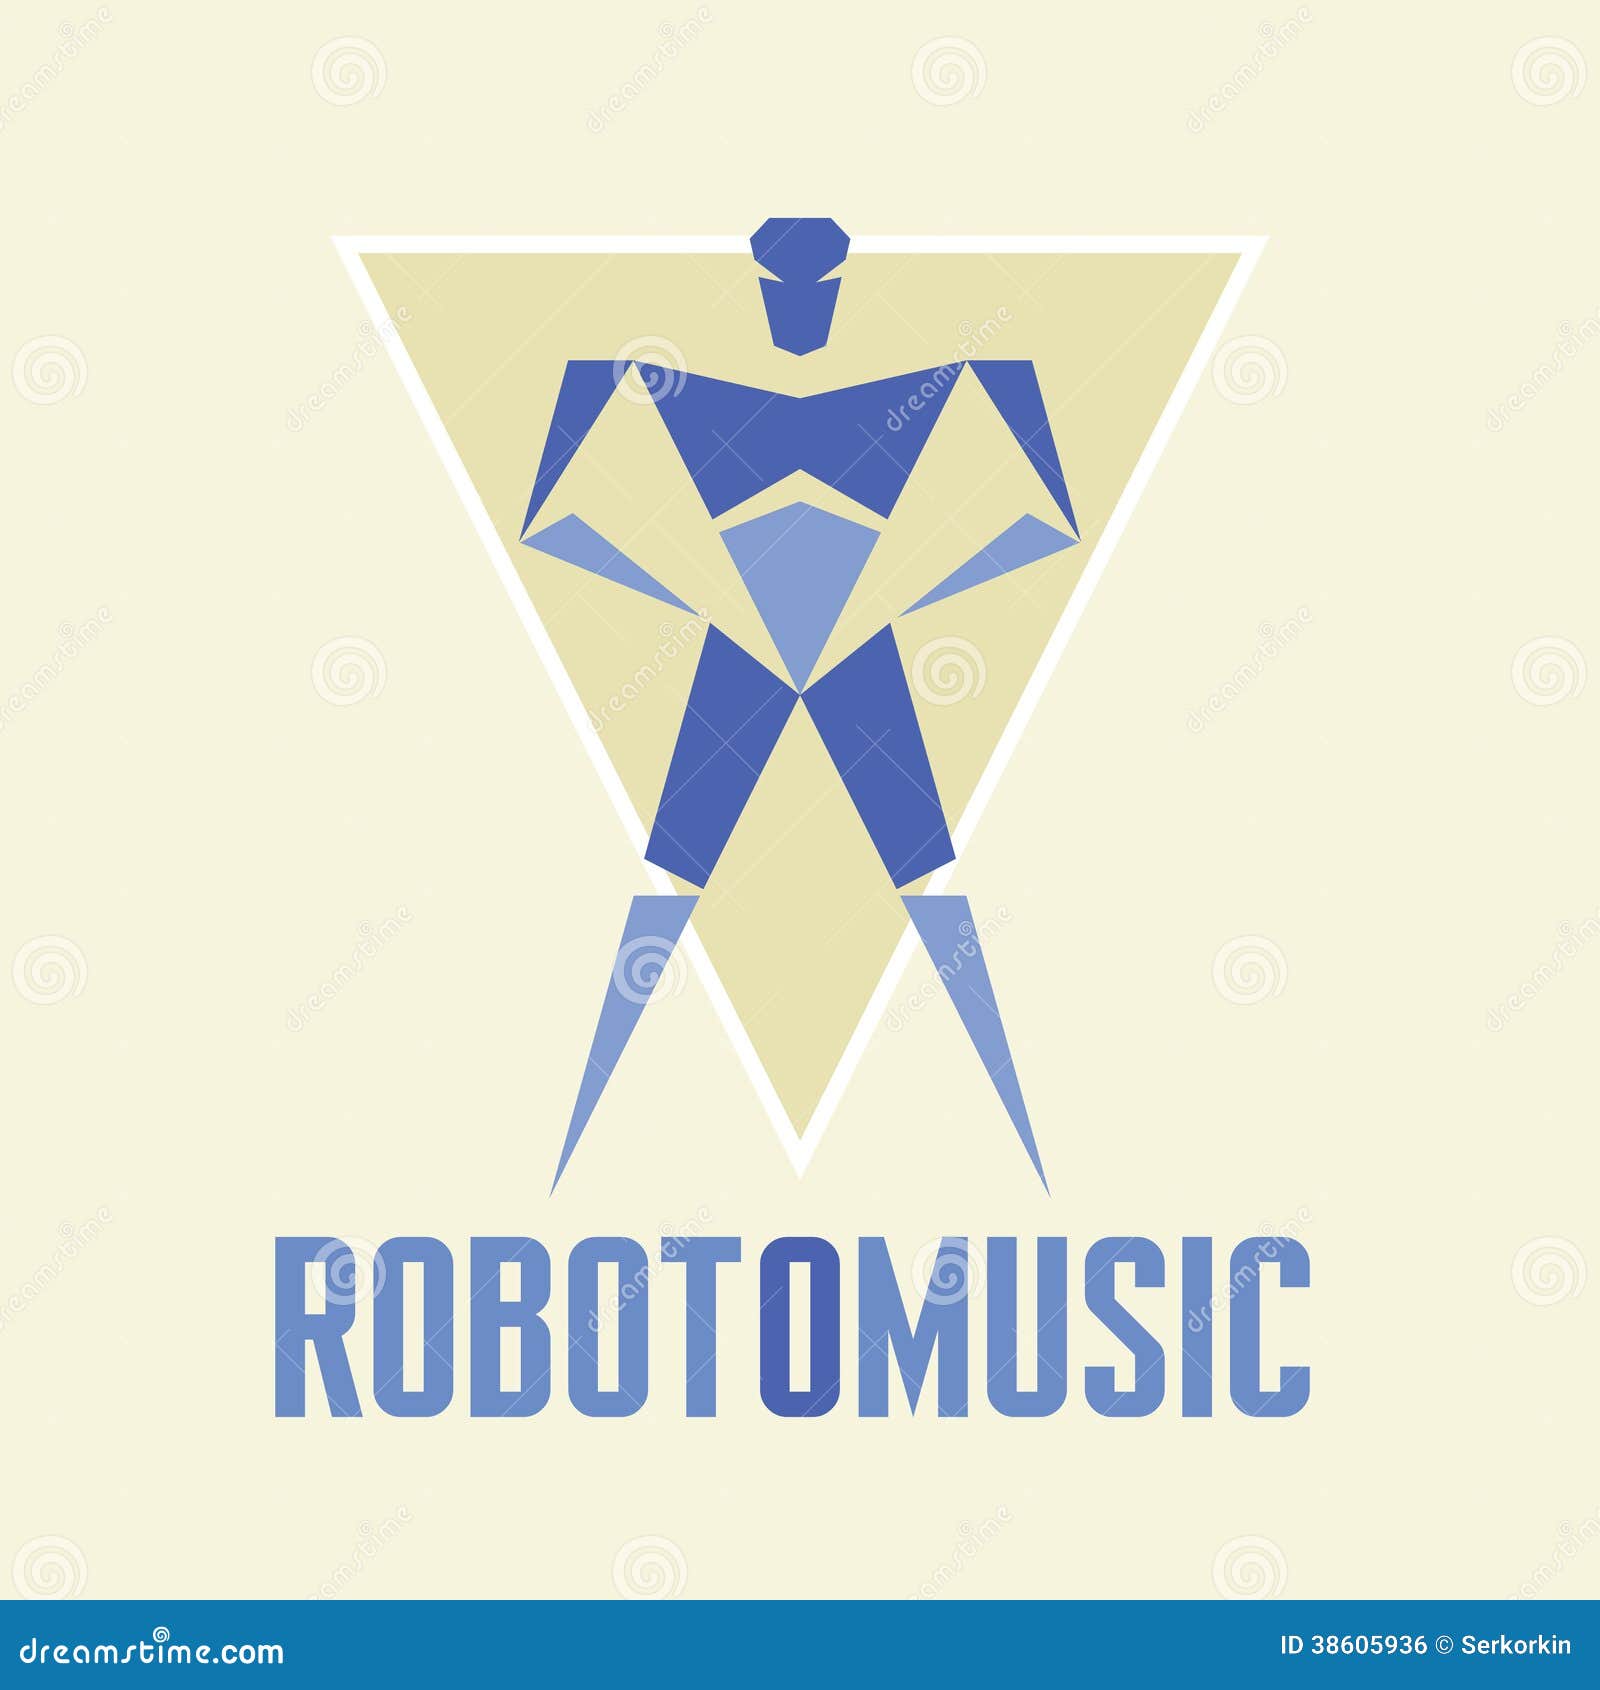 robotomusic -  logo template